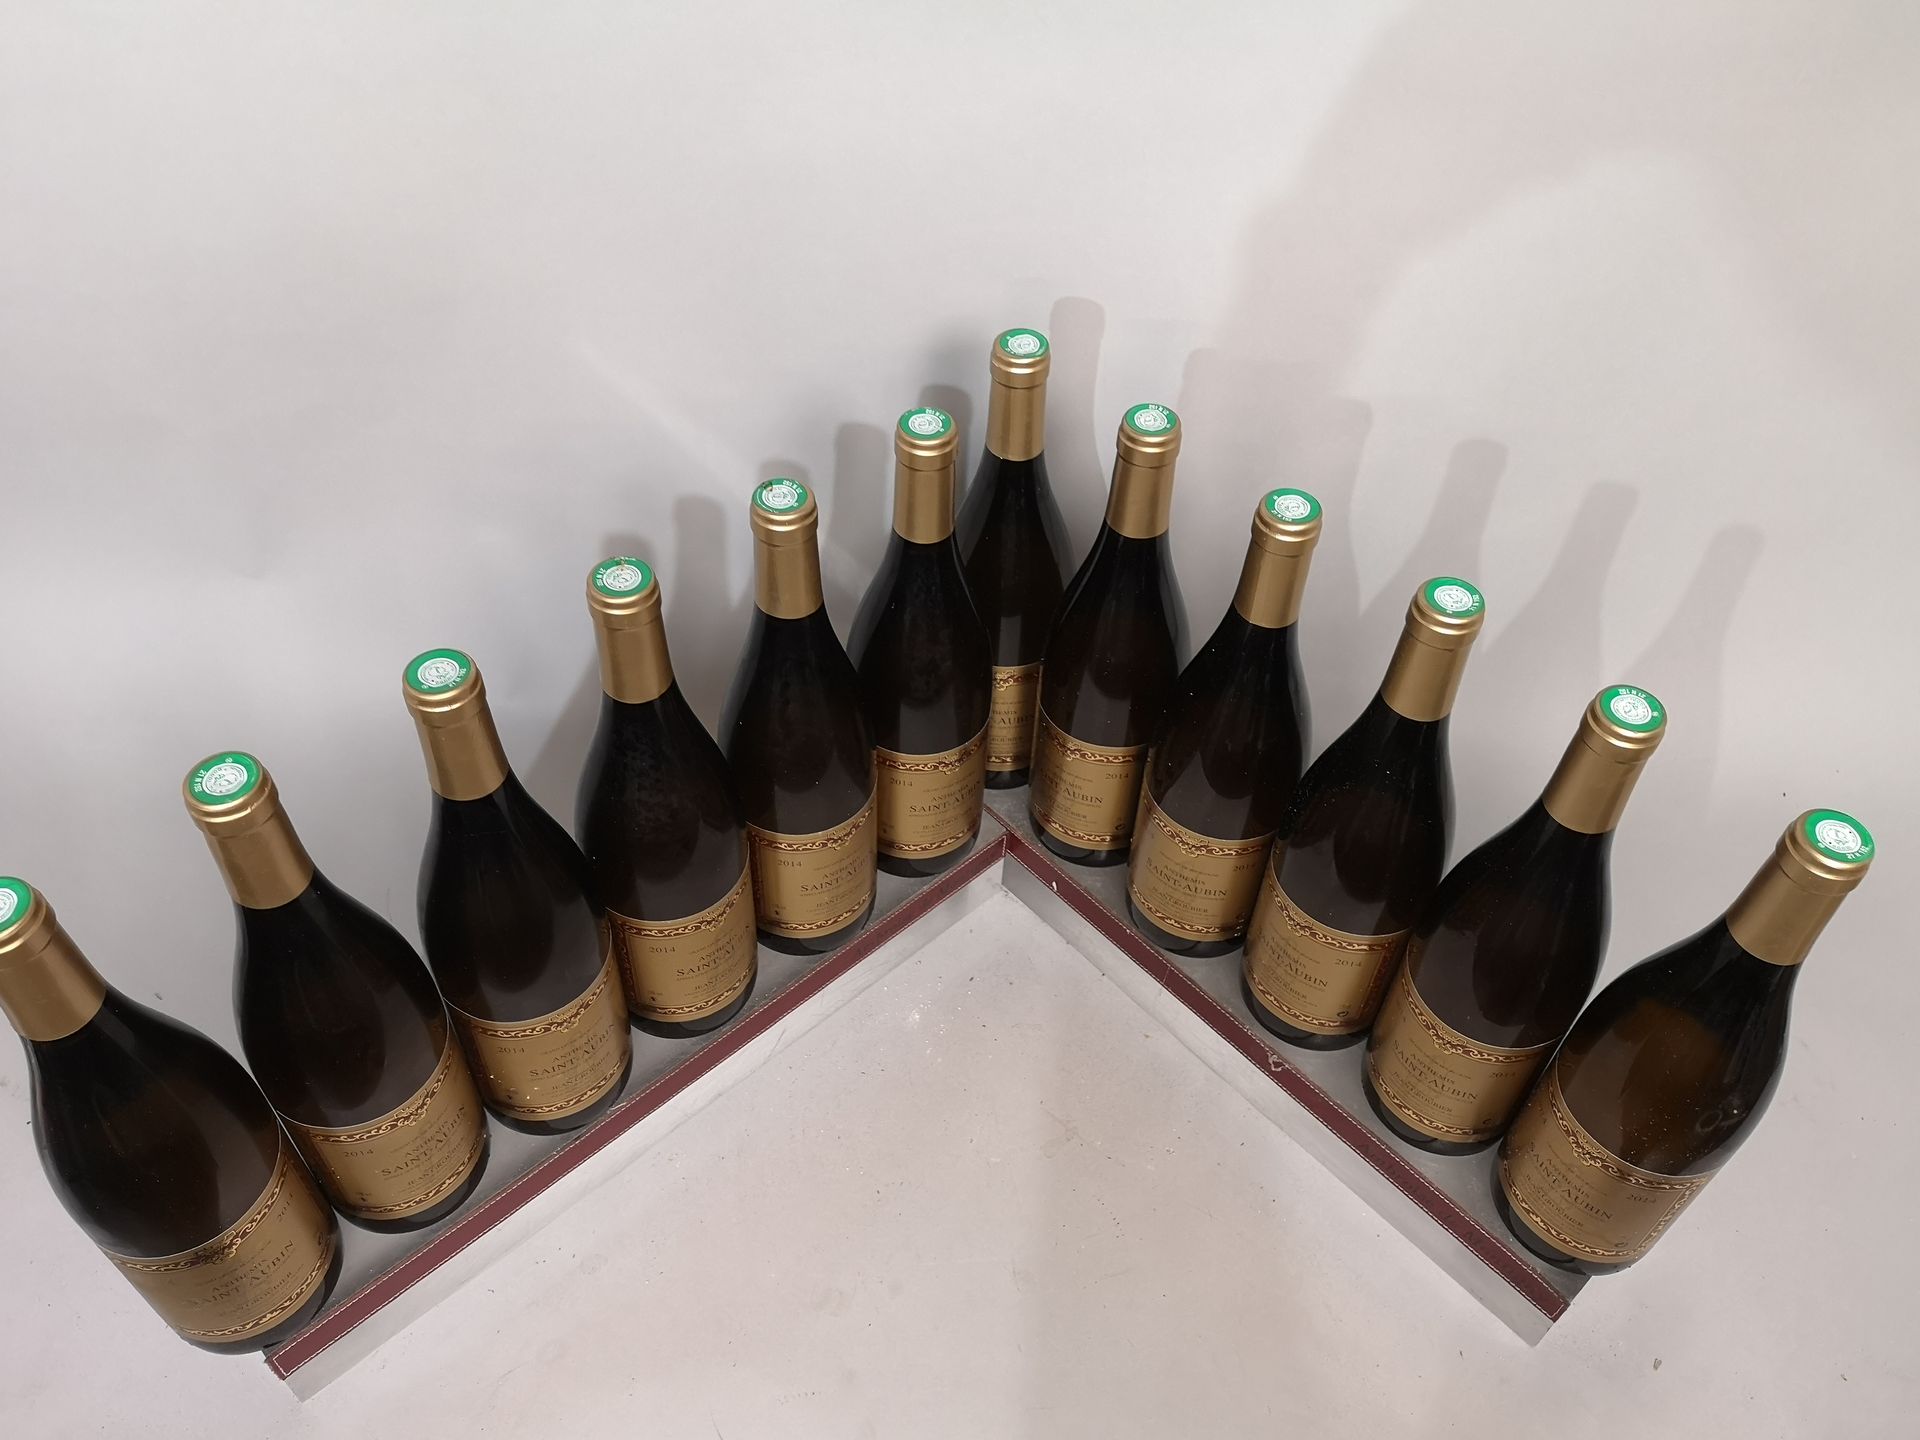 Null 12 bottiglie SAINT AUBIN Bianco "Anthemis" - Jean GROUBIER 2014